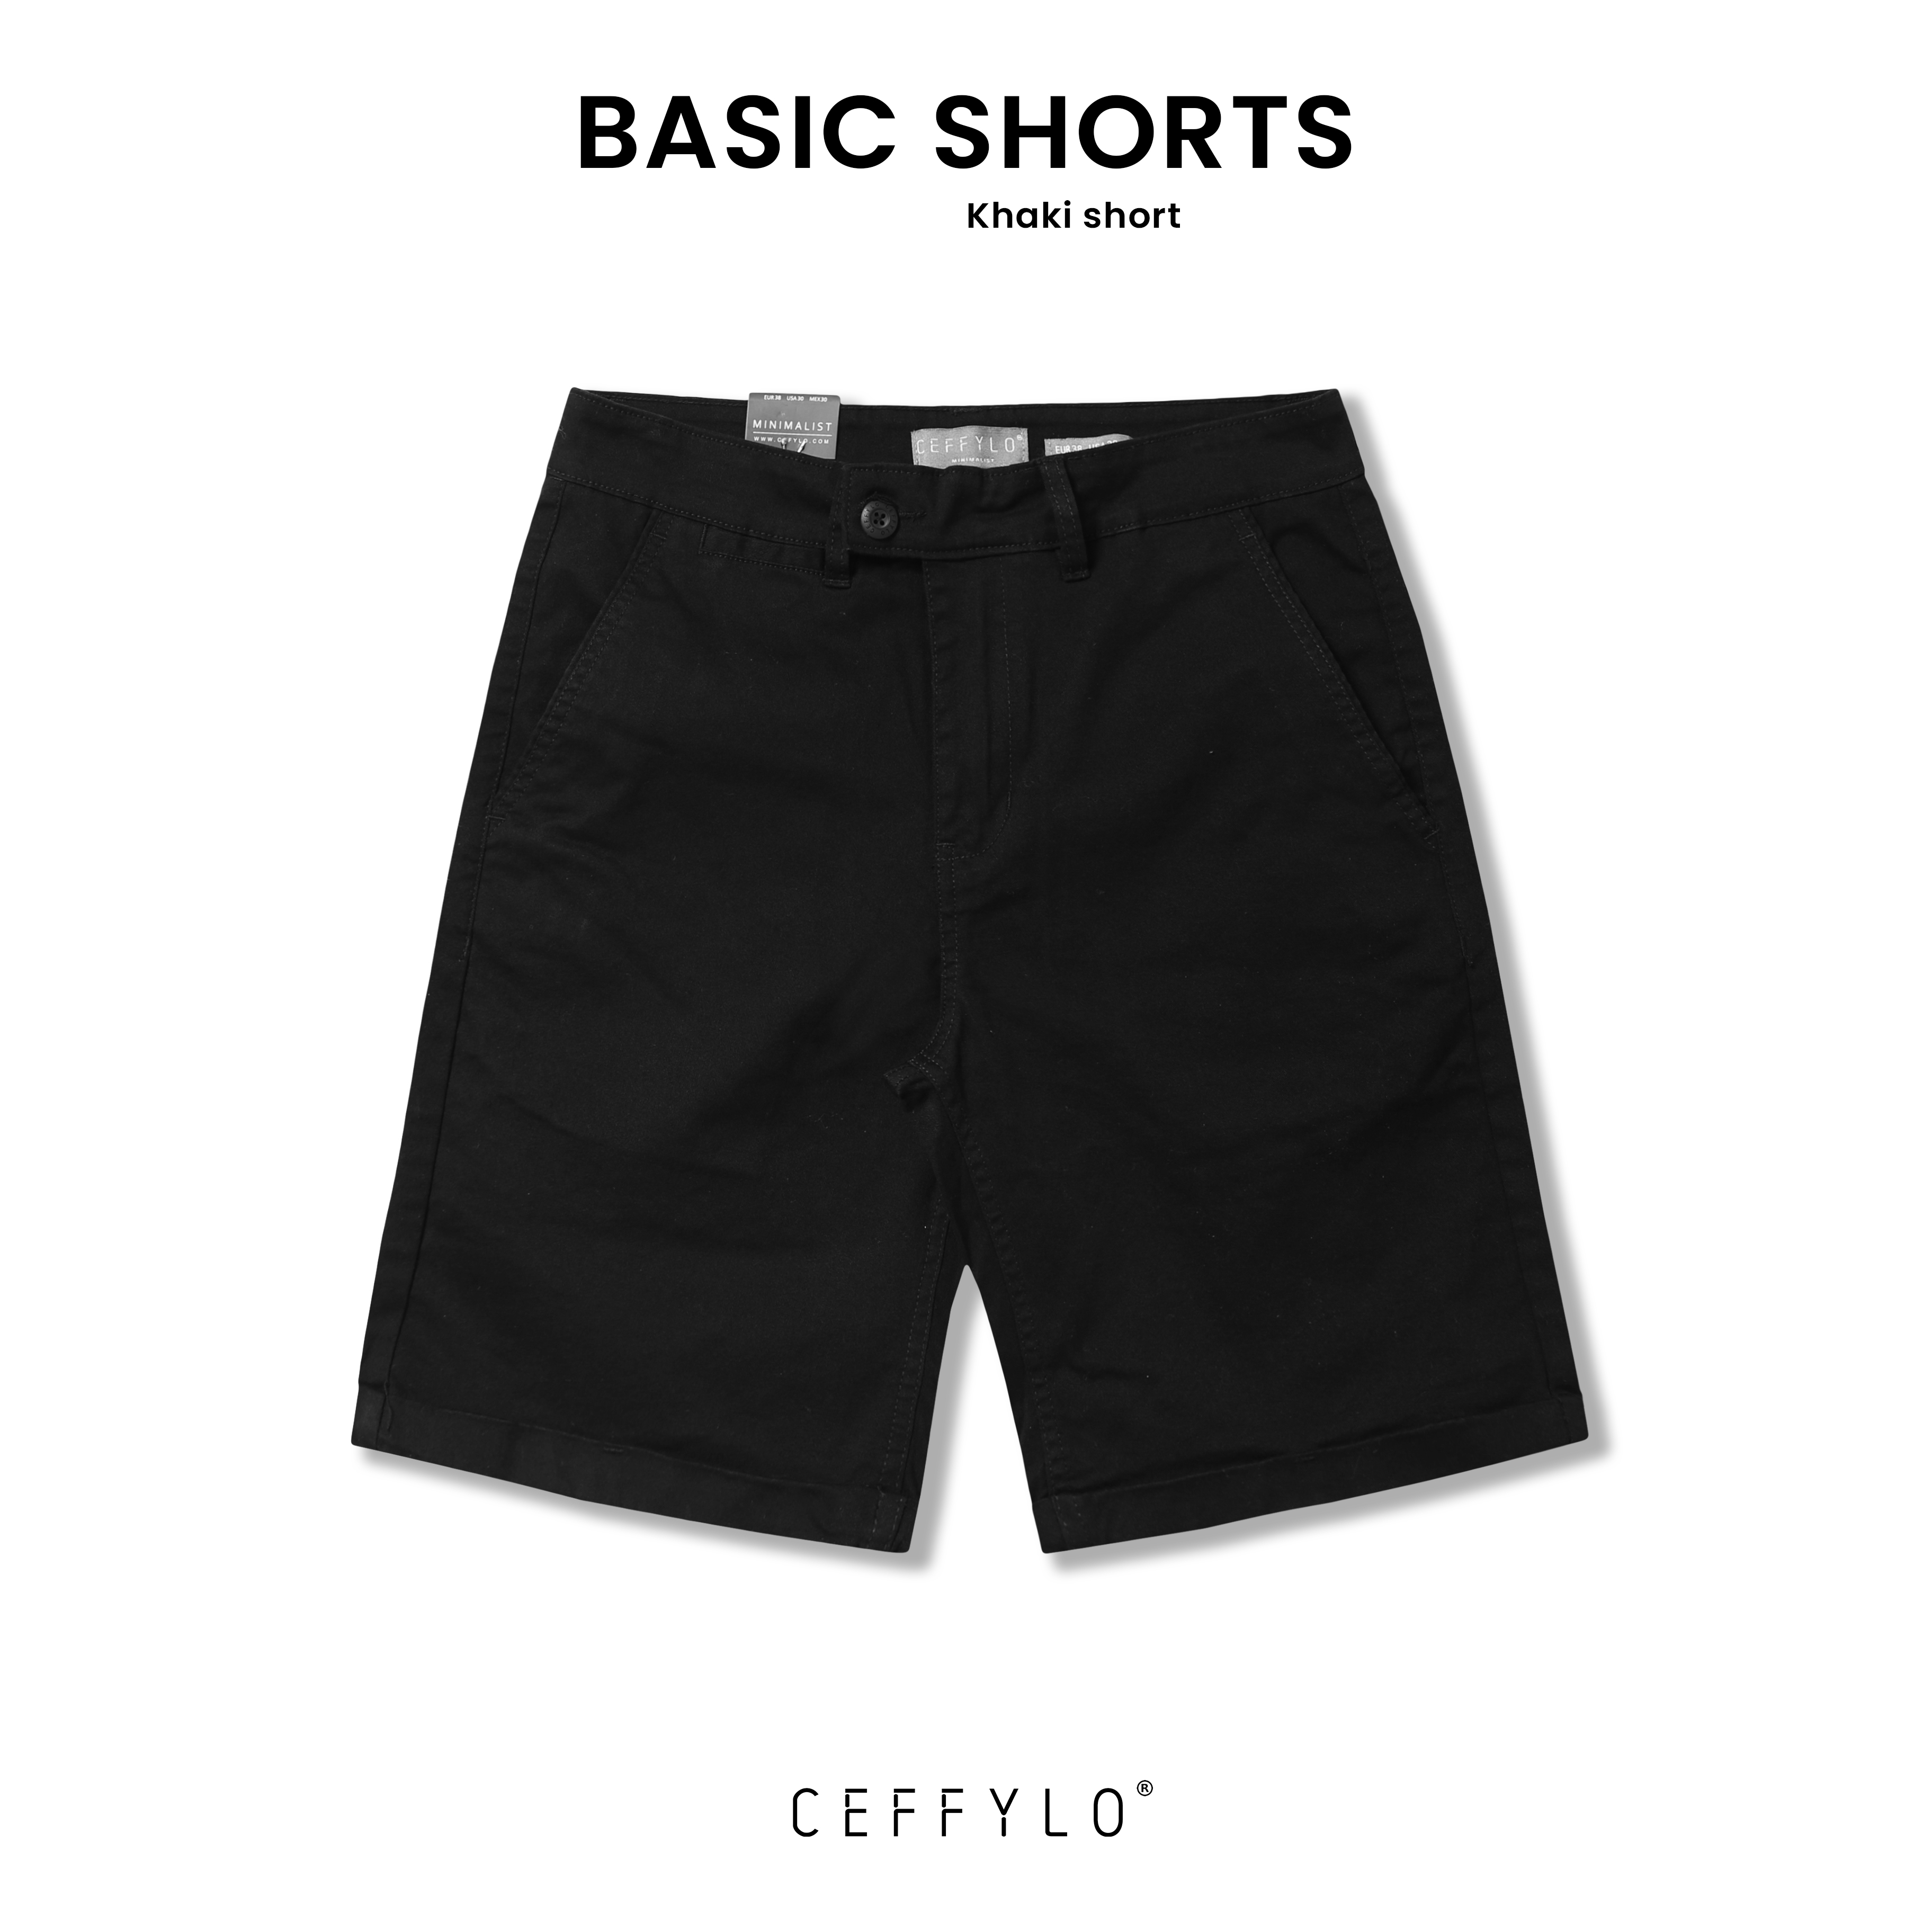 Quần Shorts Khaki Basic Màu Đen, Chất Liệu Nỉ Khaki Co Giãn, Thoáng Khí